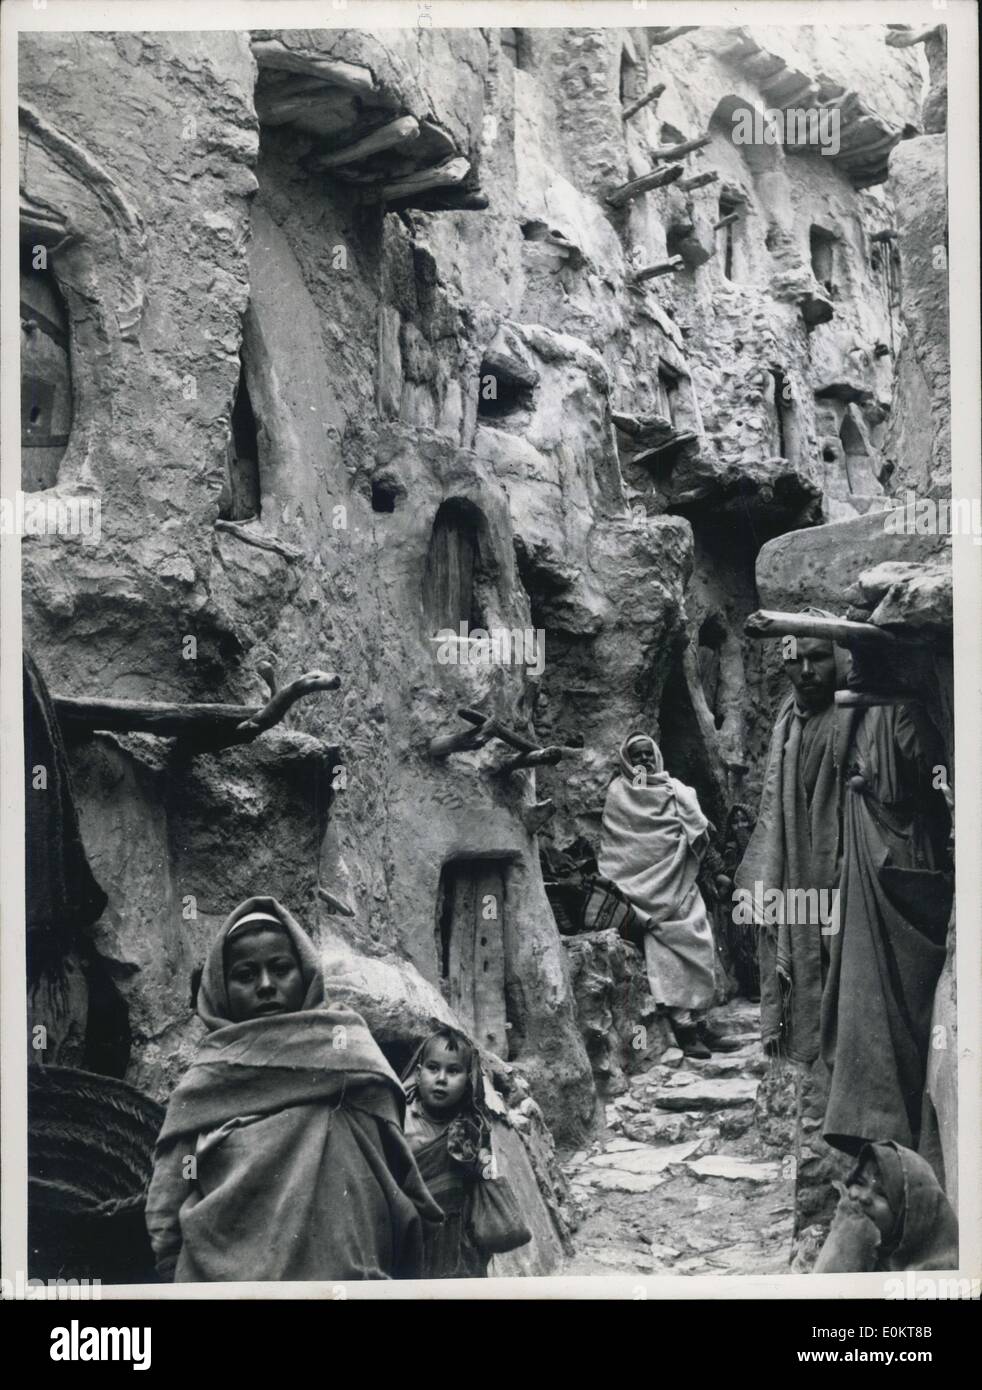 1. Januar 1950 - die Speisekammer-Festung In der Jebel. Thront auf dem Plateau des Jebel Berg bei Nalut, an der Grenze zwischen Tripolitanien und Tunesien, bewahren die Berber noch ihre mageren Ernten von Weizen, Termine und Olivenöl in länglich geformte Höhlen aus der inneren Wände und Mauern einer Festung Jahrhunderten zu diesem Zweck ausgehöhlt. Vor Jahren den Jebel Berbers wurden ständig von anderen Stämmen, die ihre Frauen und Tiere verlassen die Ebene stahlen durchsucht flüchtete sie in die Berge dieser gigantischen Festung zu Haus ihre Scheich und ihre Nahrung zu bauen Stockfoto